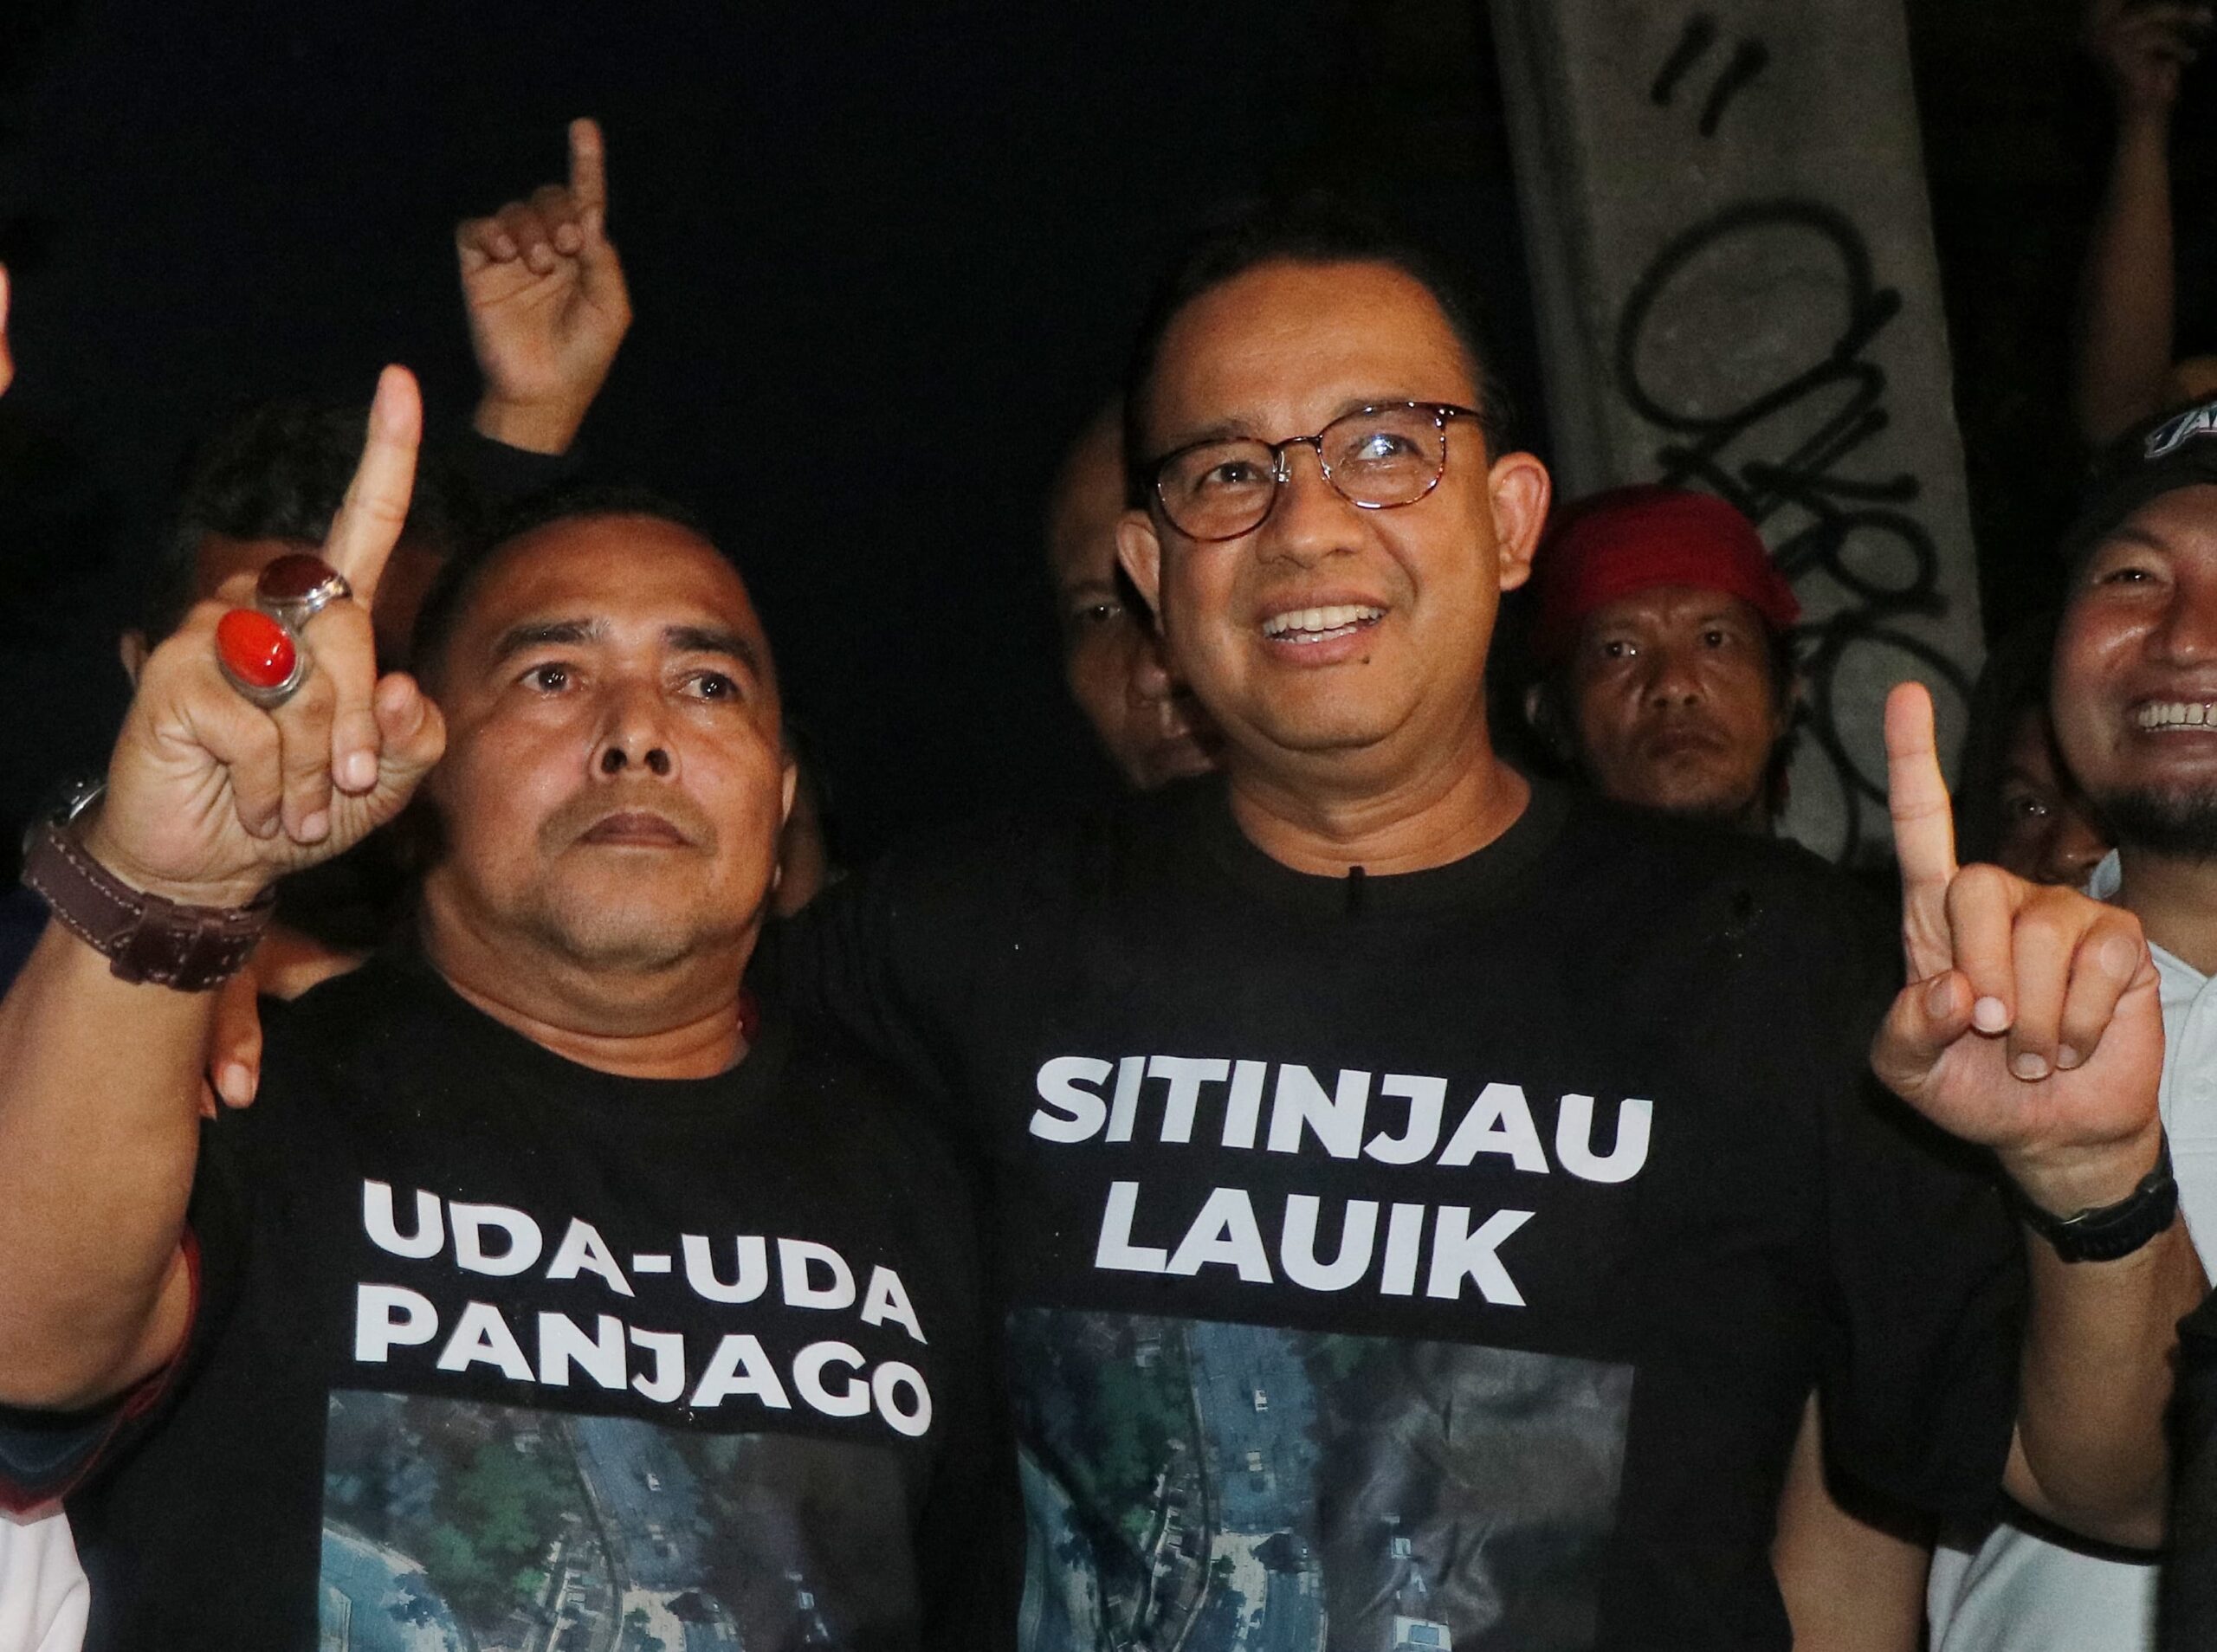 Anies Baswedan memberikan kaos spesial kepada Caleg Partai Ummat Adrian Tuswandi di Sitinjau Lauik, Sumatera Barat.